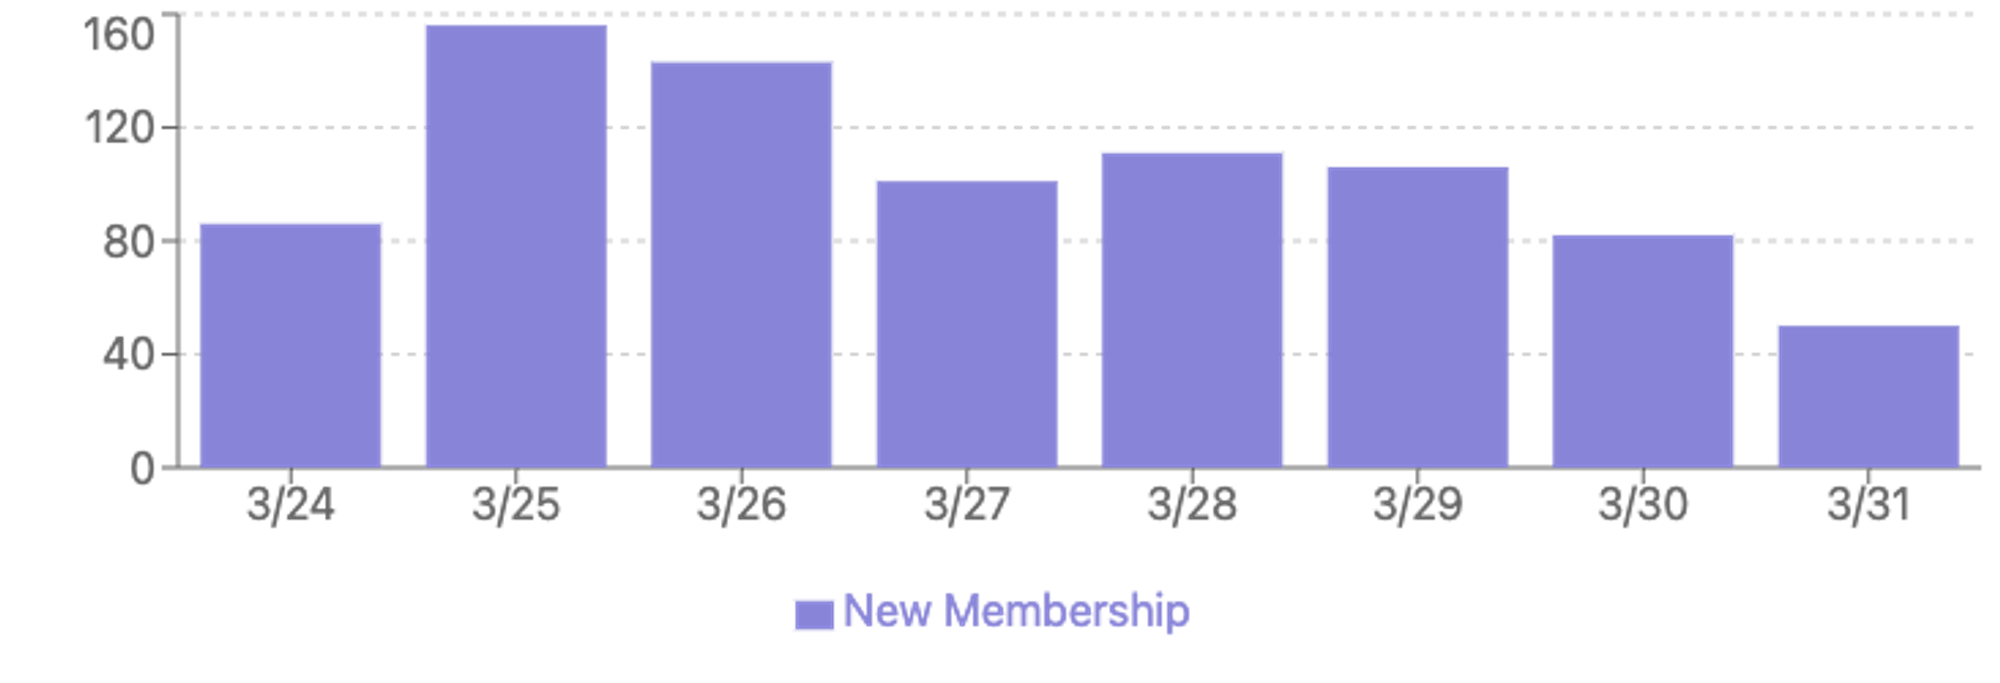 membership 331